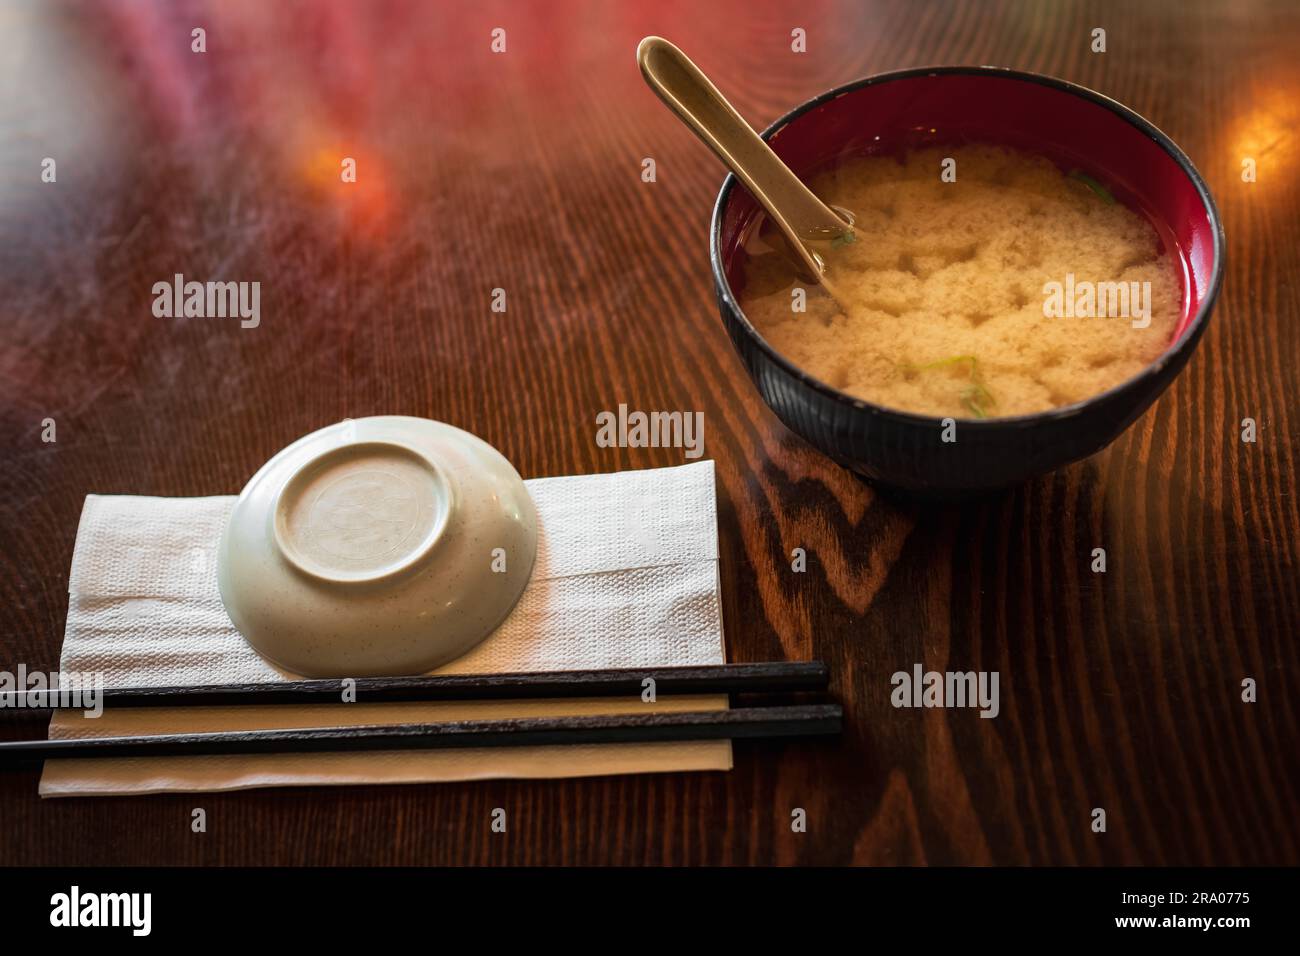 Soupe miso dans un bol dans un restaurant japonais local à Vancouver, en Colombie-Britannique. Soupe asiatique dans un bol avec baguettes. Personne, vue de dessus Banque D'Images